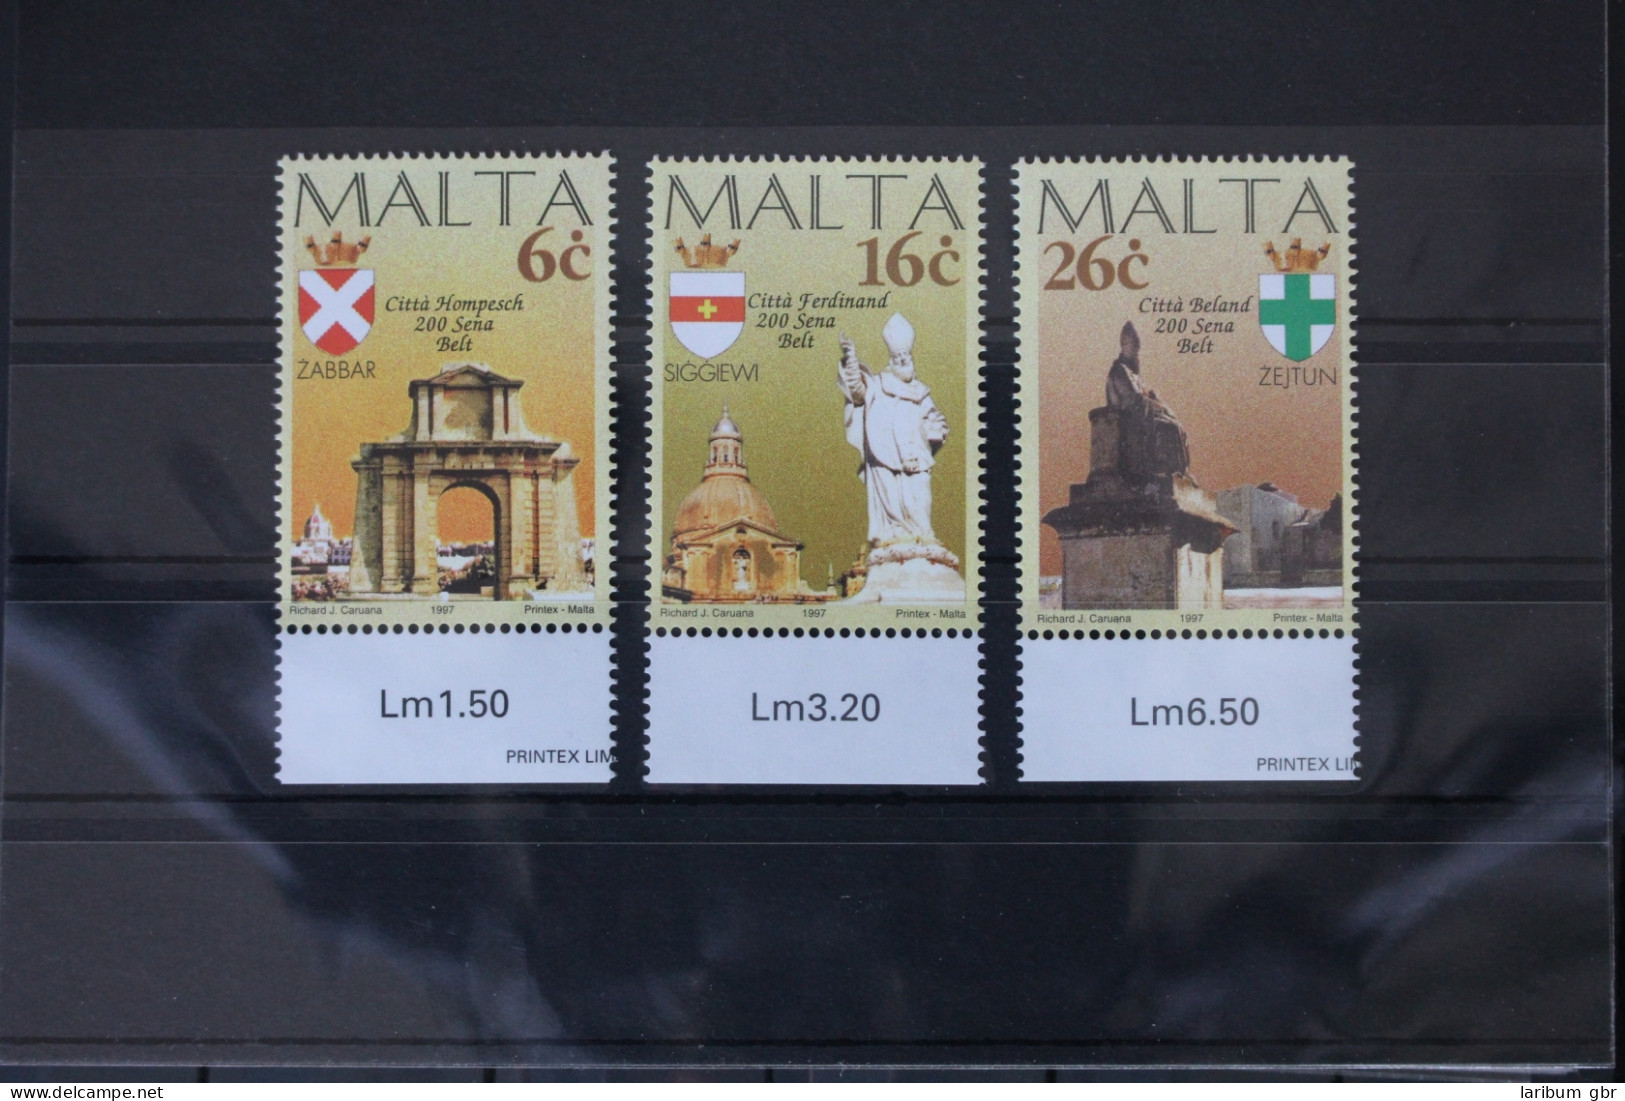 Malta 1005-1007 Postfrisch #VR985 - Malte